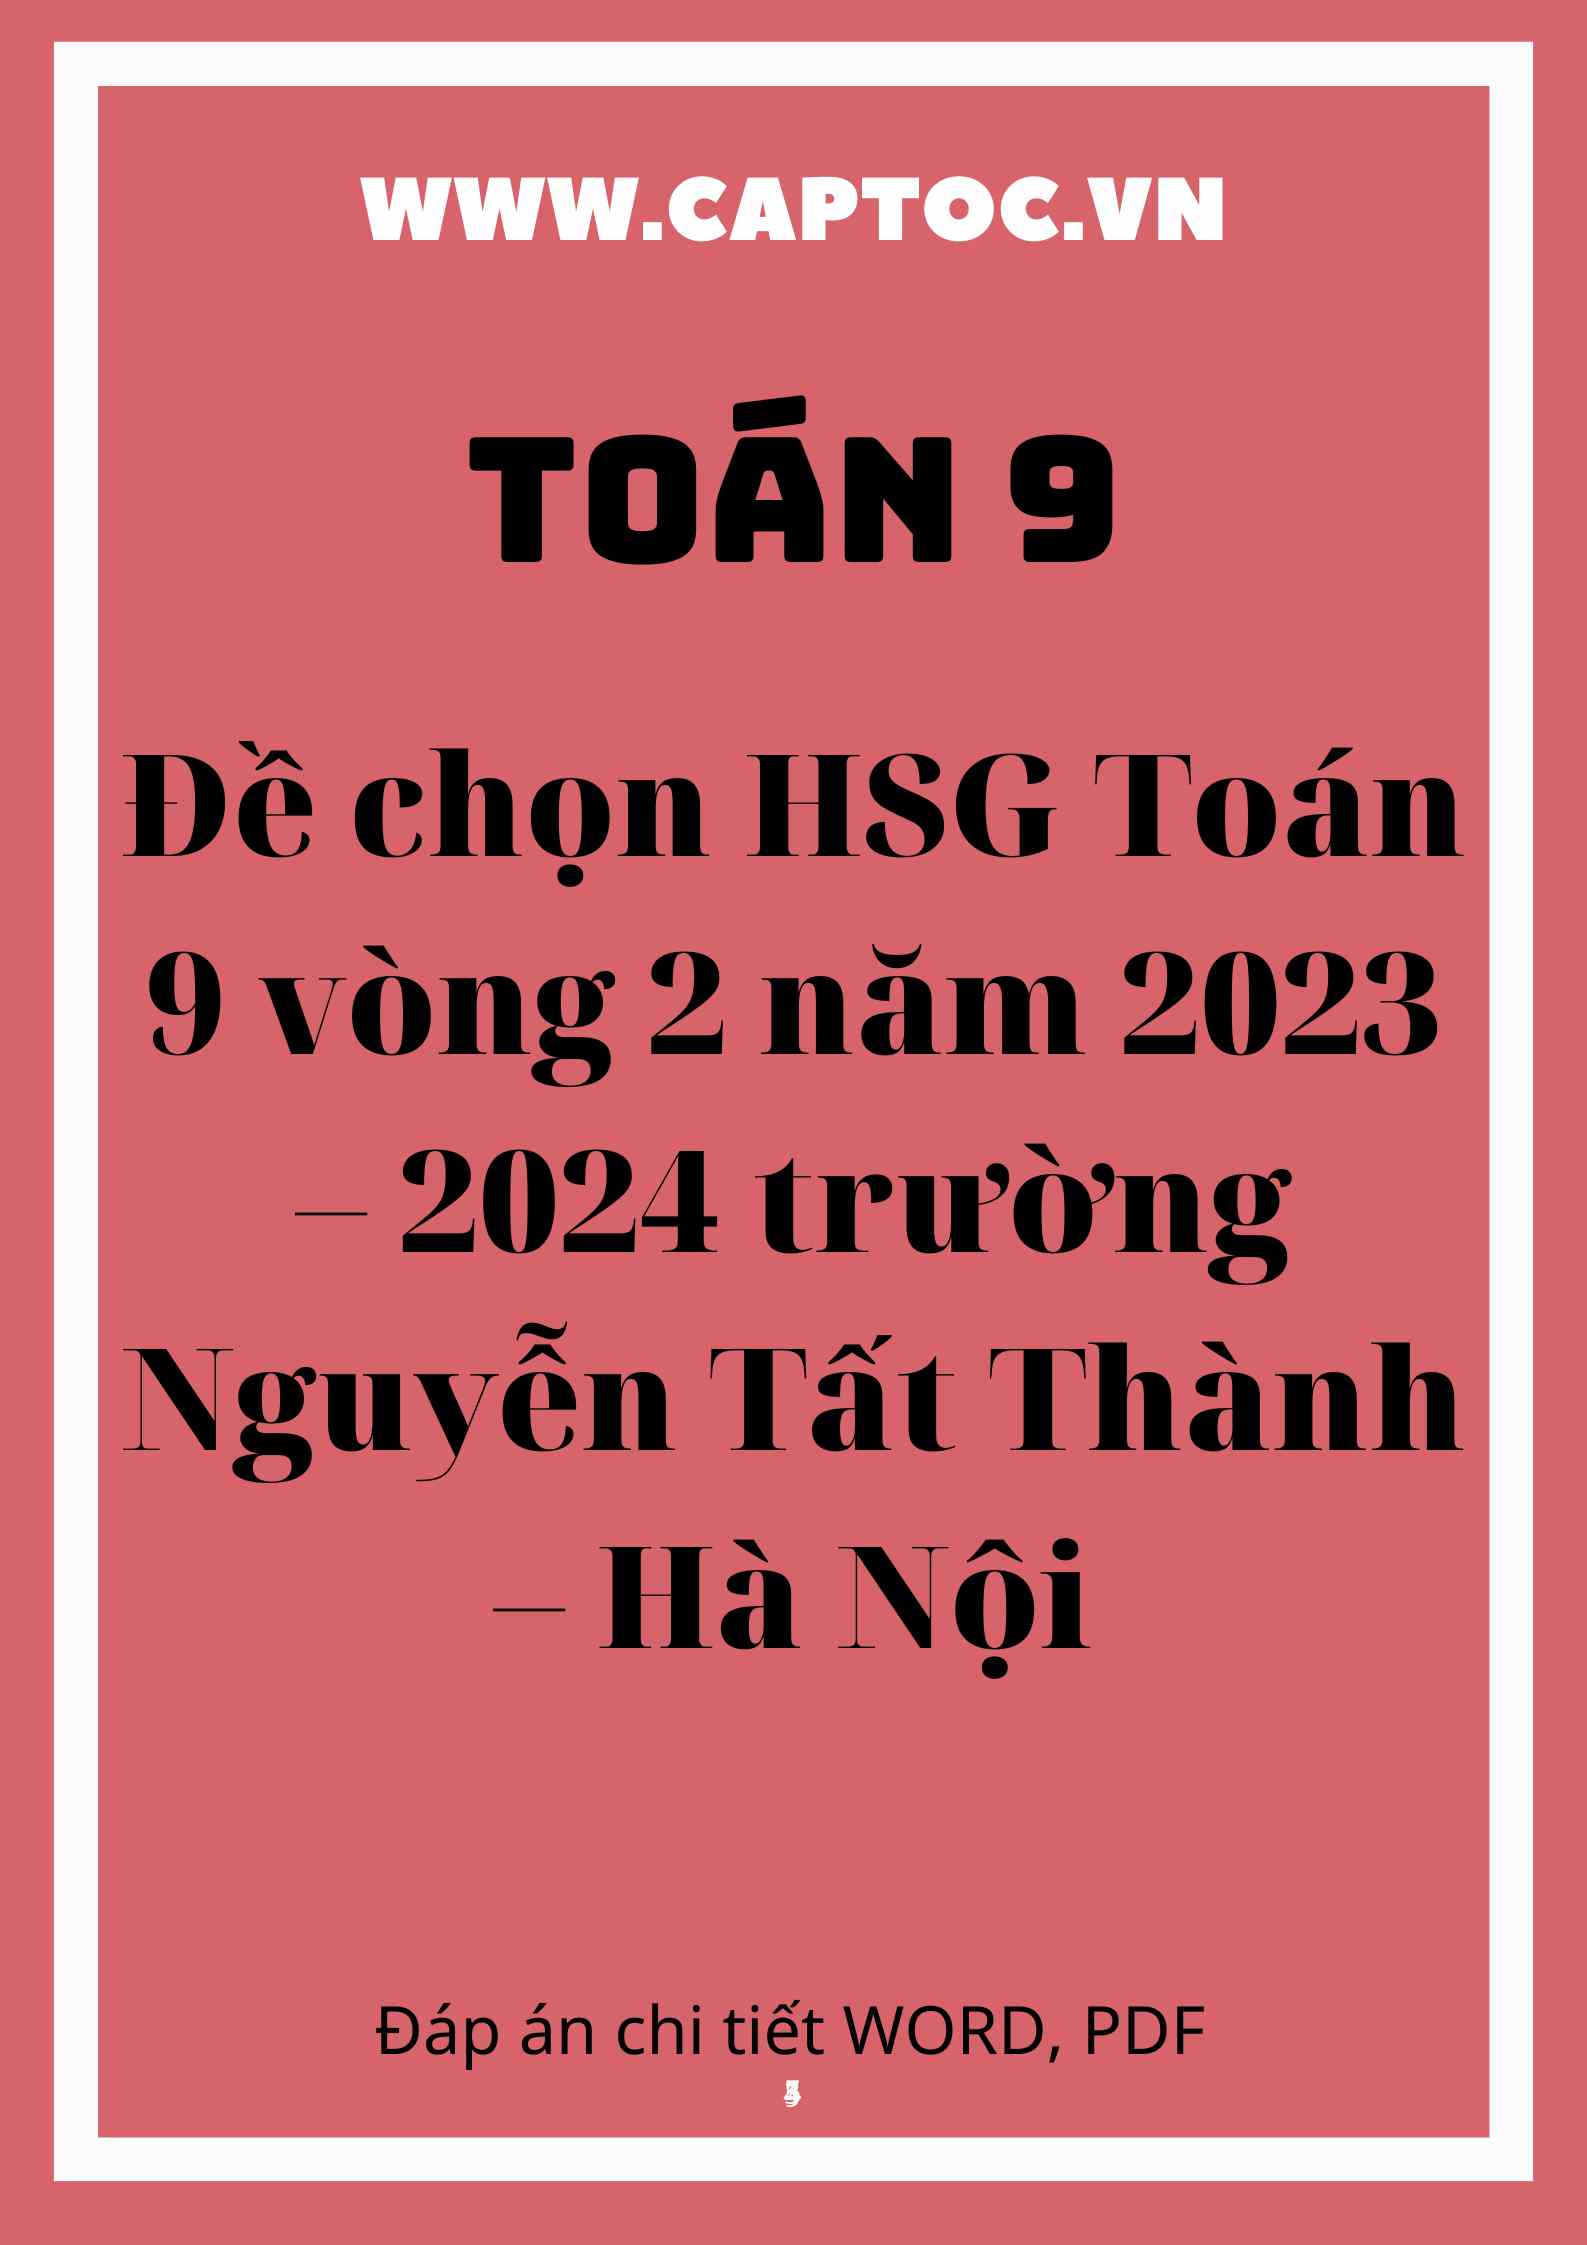 Đề chọn HSG Toán 9 vòng 2 năm 2023 – 2024 trường Nguyễn Tất Thành – Hà Nội